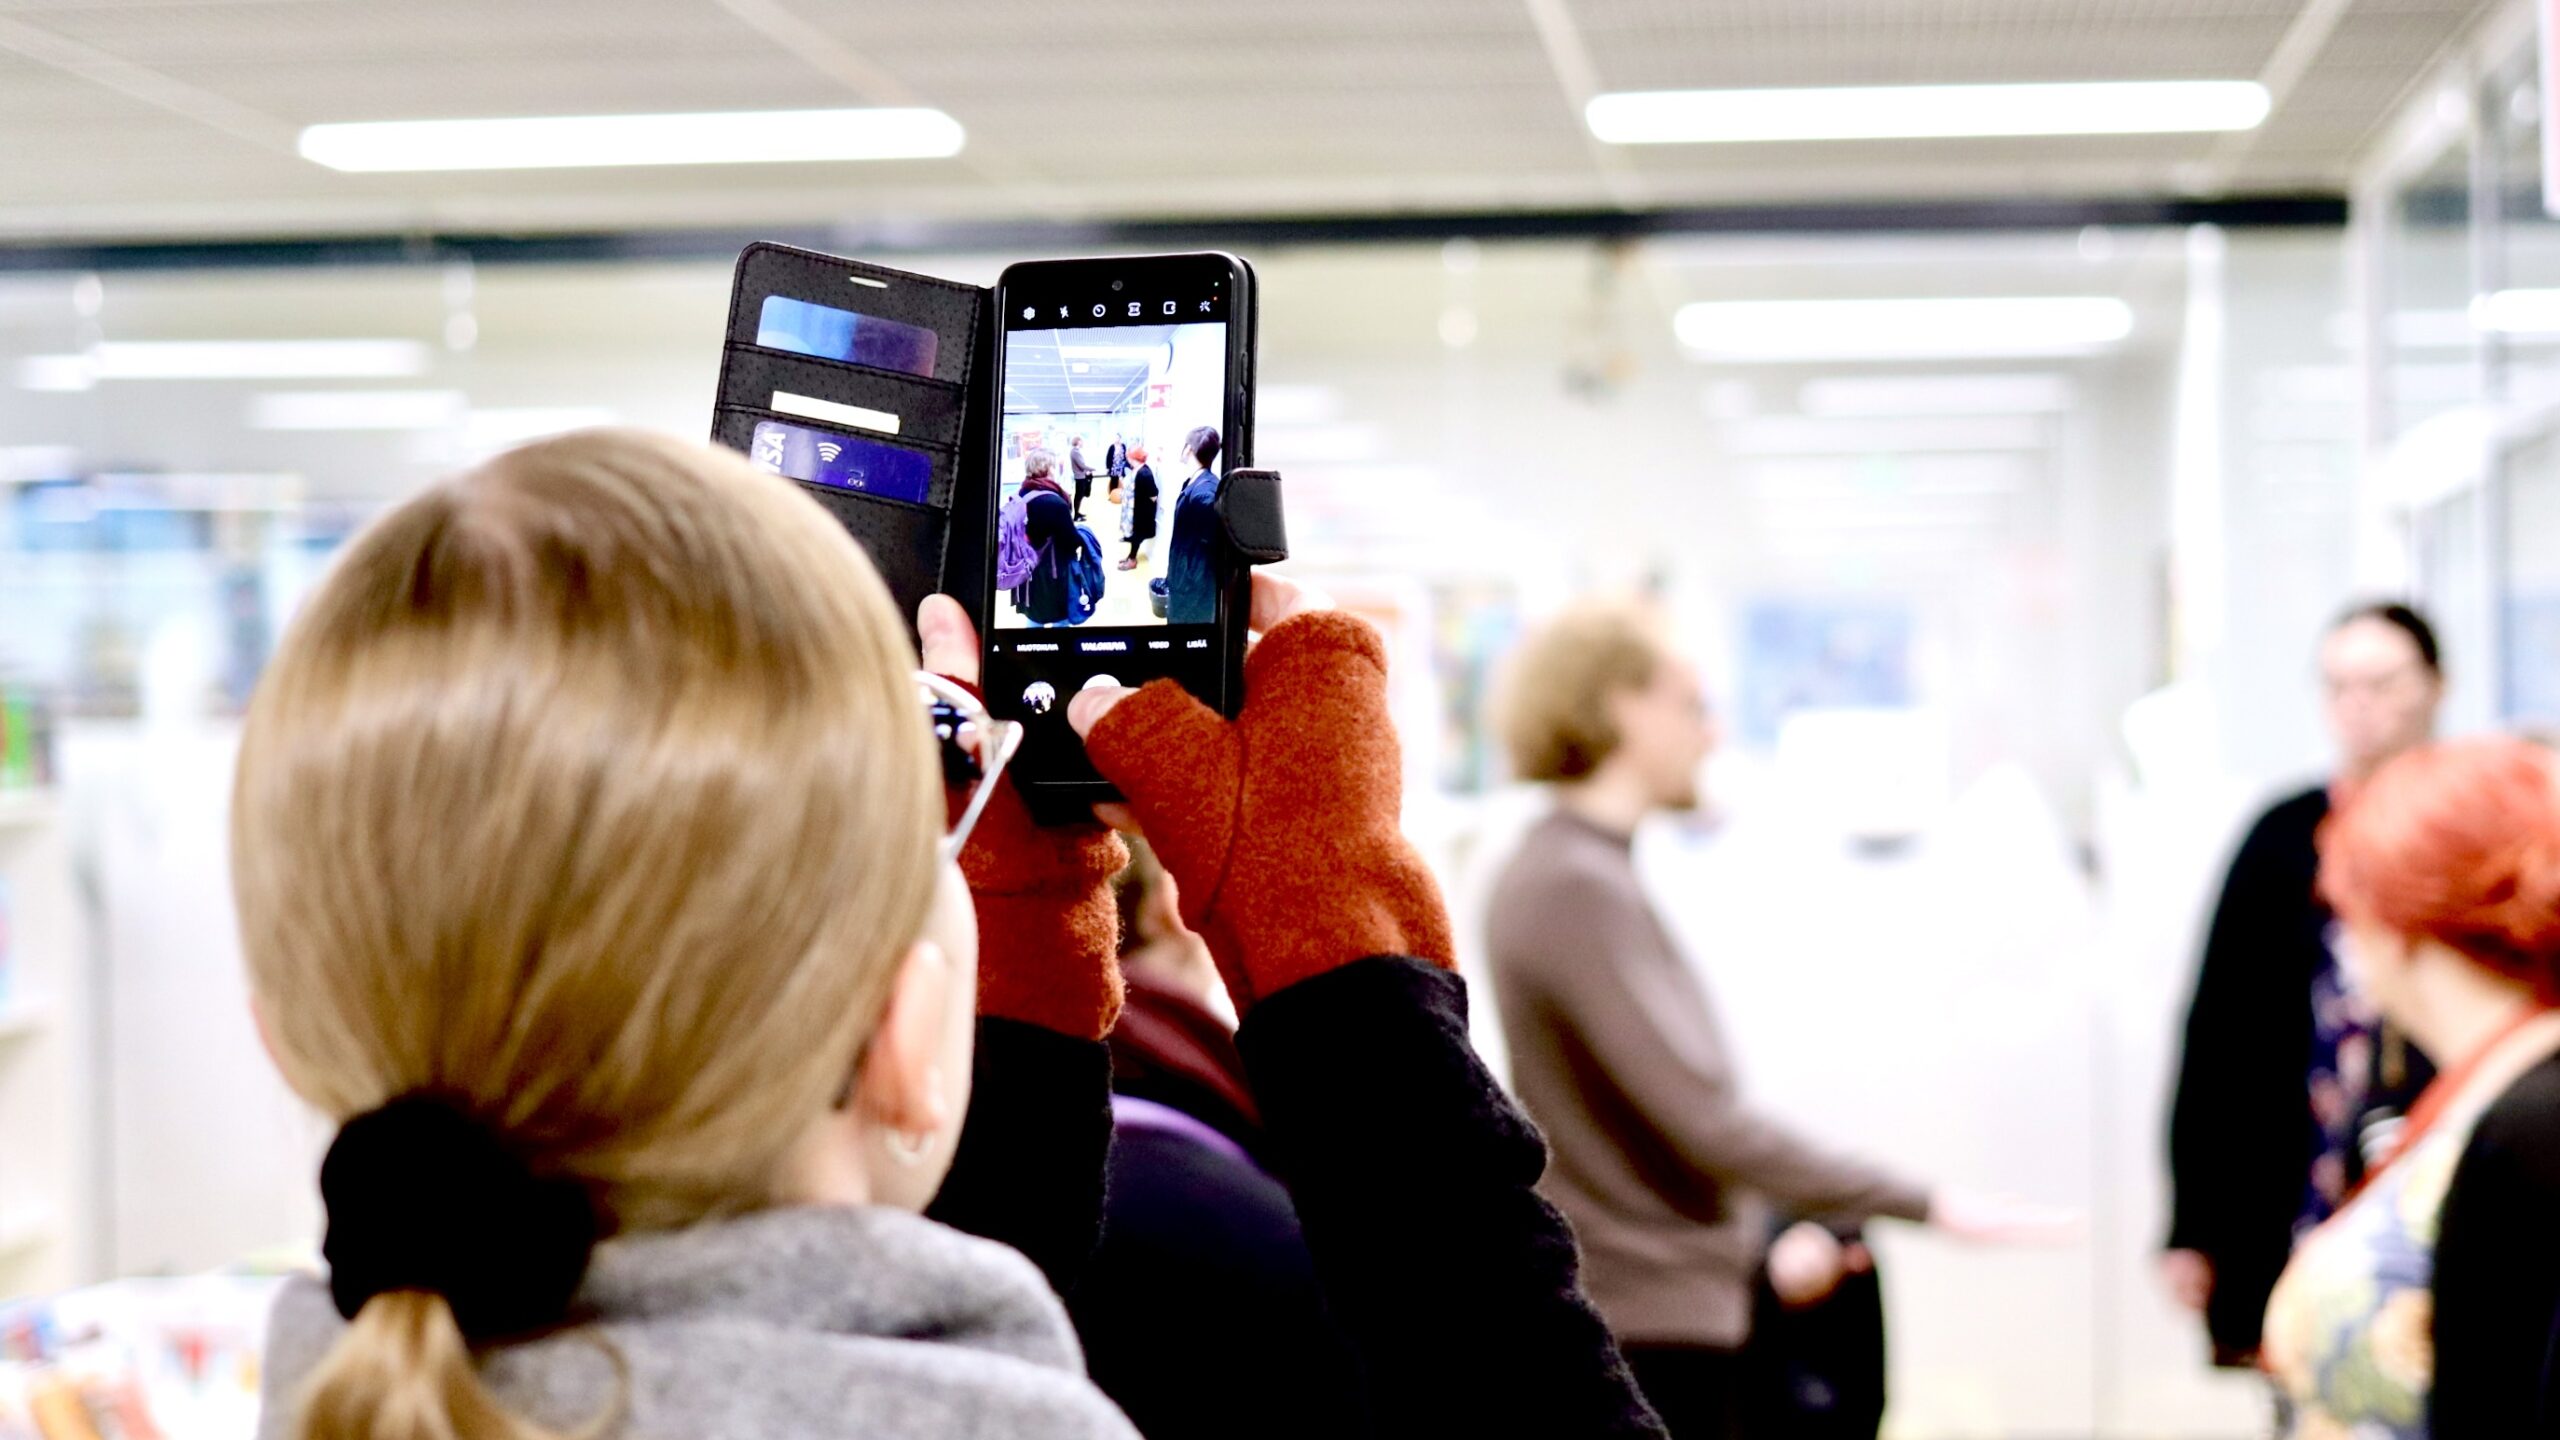 Henkilön pää selin kameraan, kädessä kirjastotilaa ja taustan ihmisiä kuvaava älypuhelin.